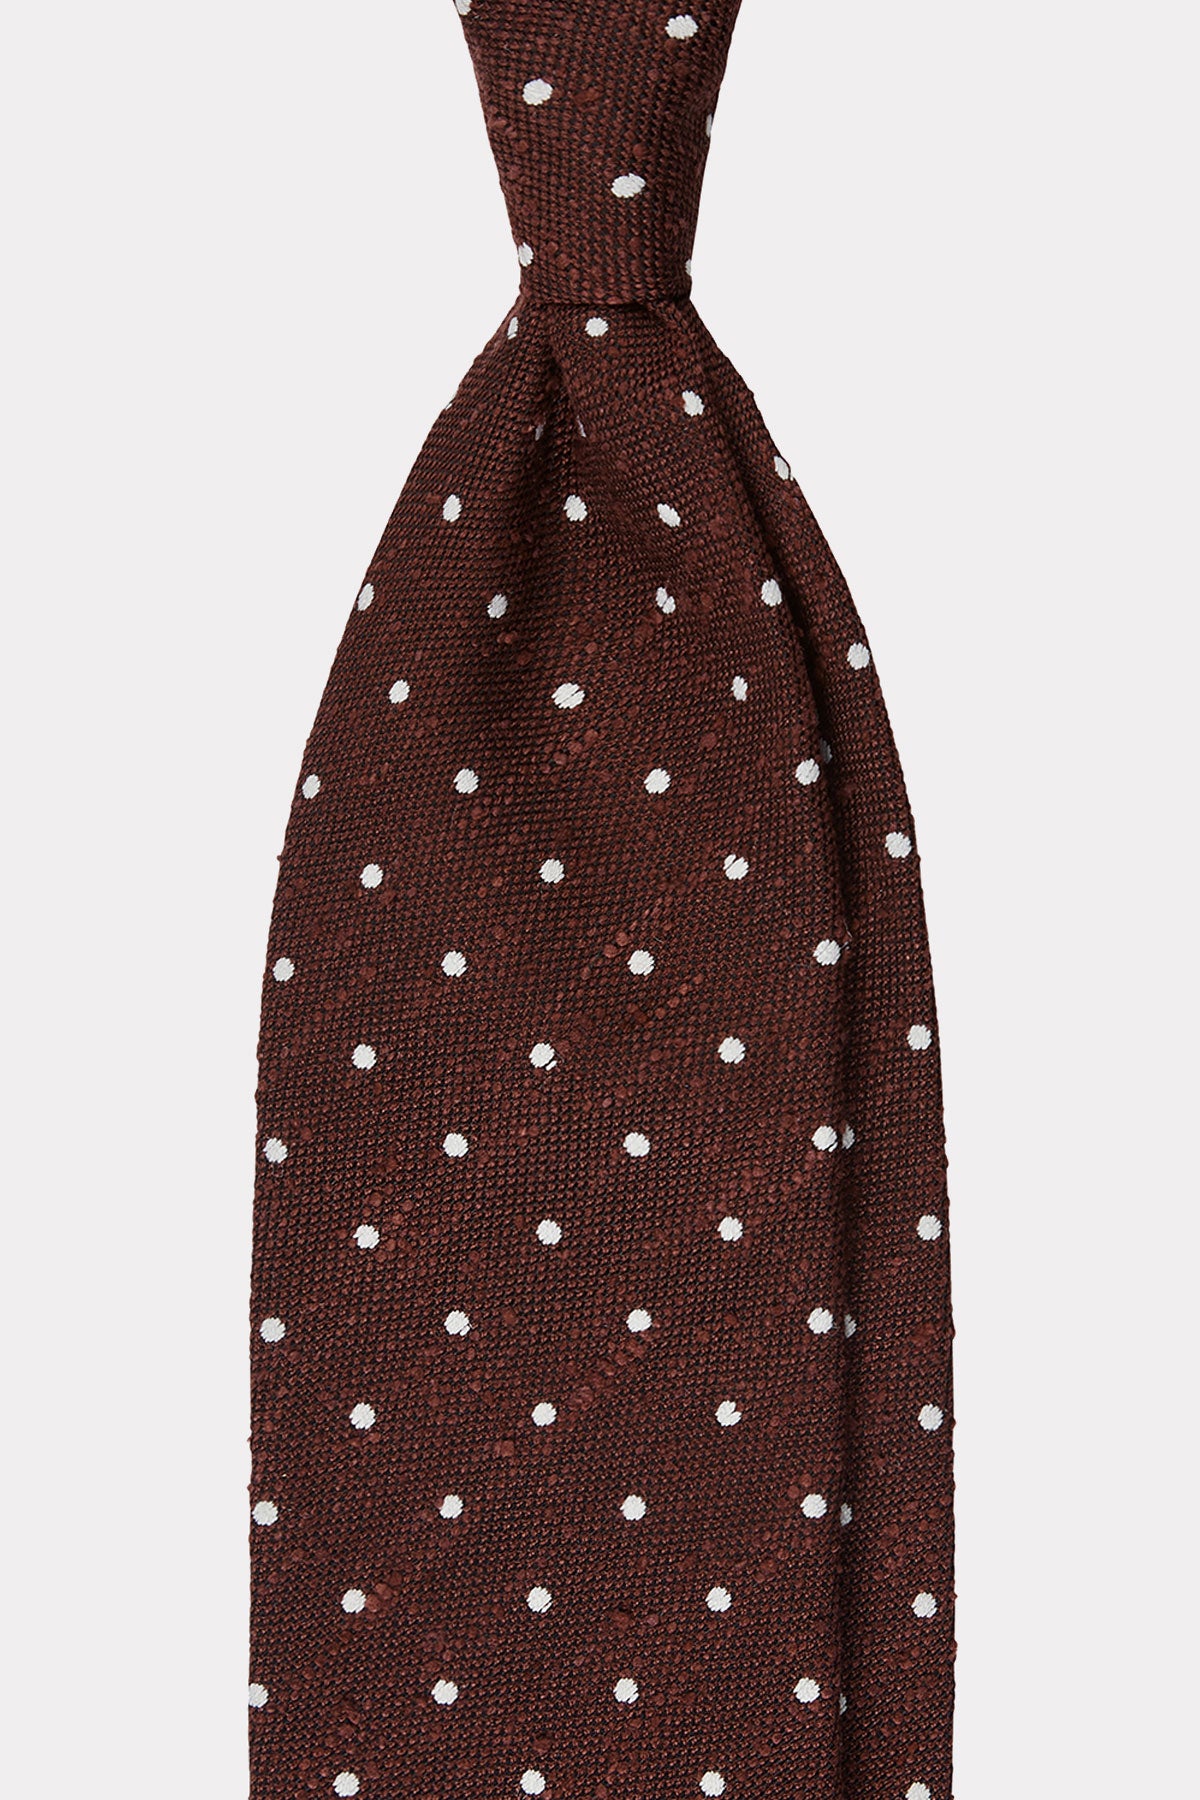 Krawatte in rot